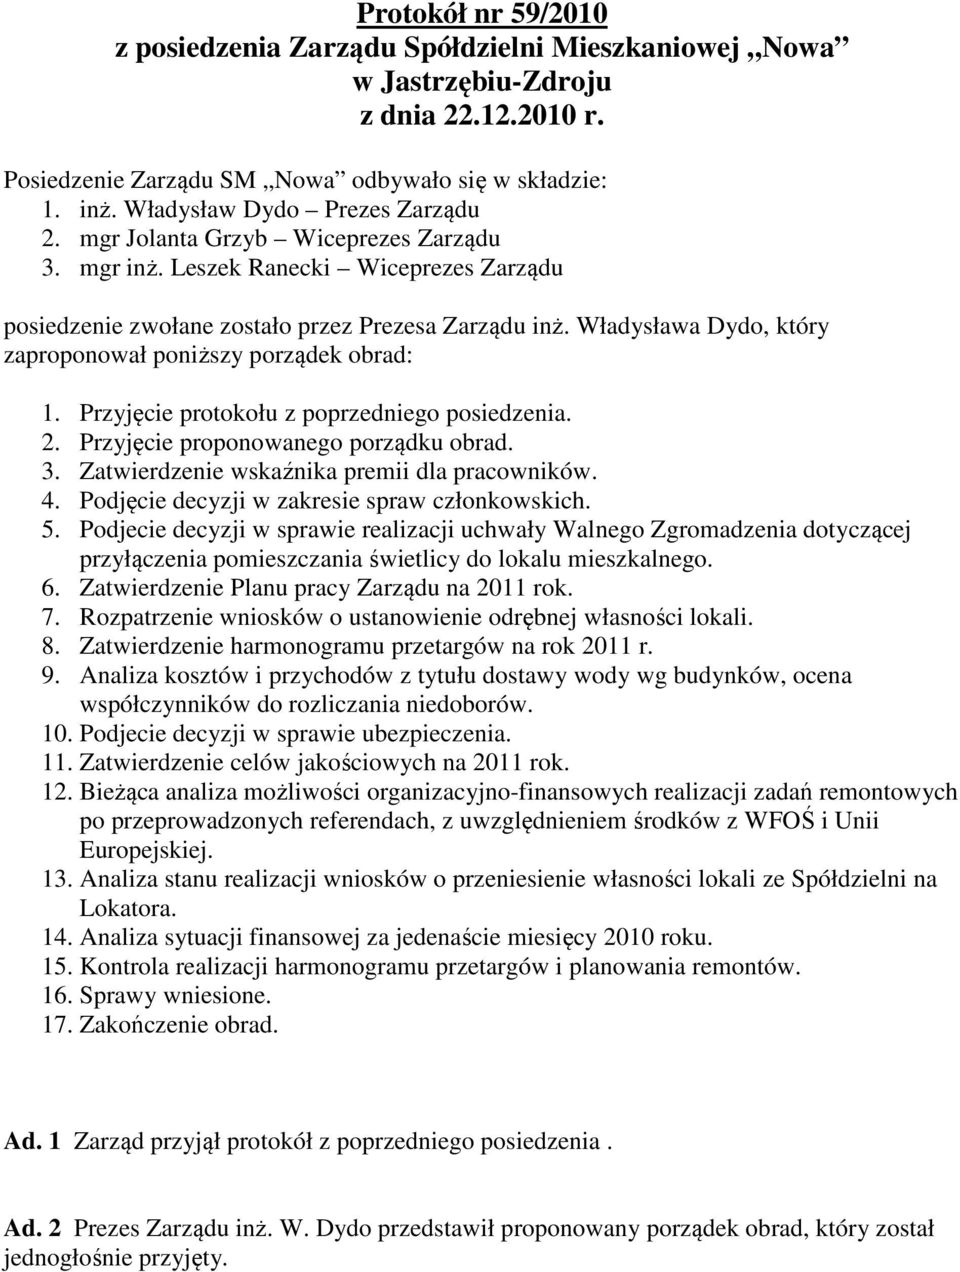 Władysława Dydo, który zaproponował poniższy porządek obrad: 1. Przyjęcie protokołu z poprzedniego posiedzenia. 2. Przyjęcie proponowanego porządku obrad. 3.